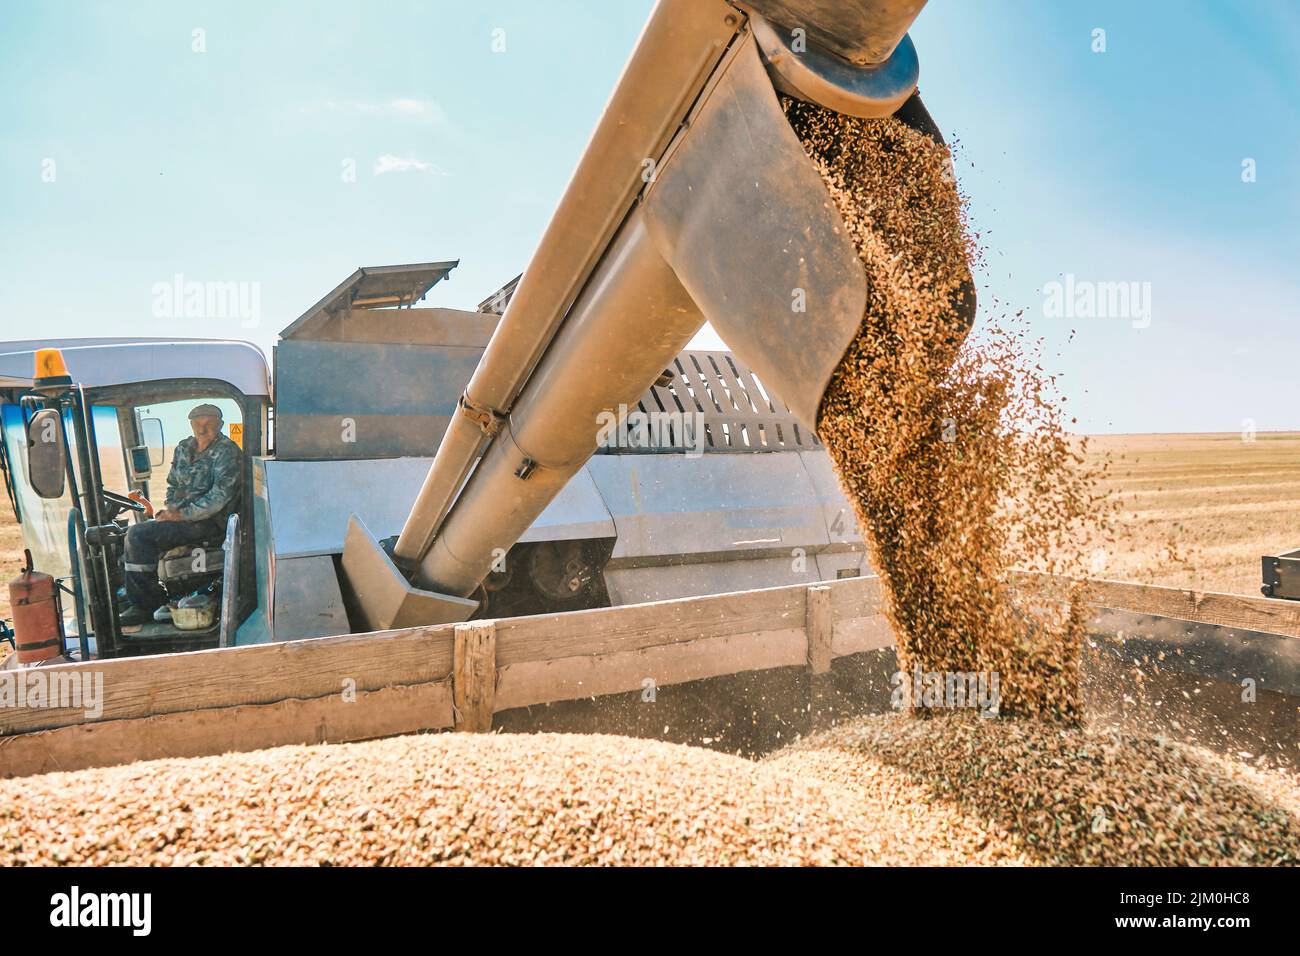 Weizenkorn Ernte in der Ukraine, einem weltweit führenden Getreidelieferanten. Goldweizen wird für Transport und Lagerung vorbereitet. Stockfoto